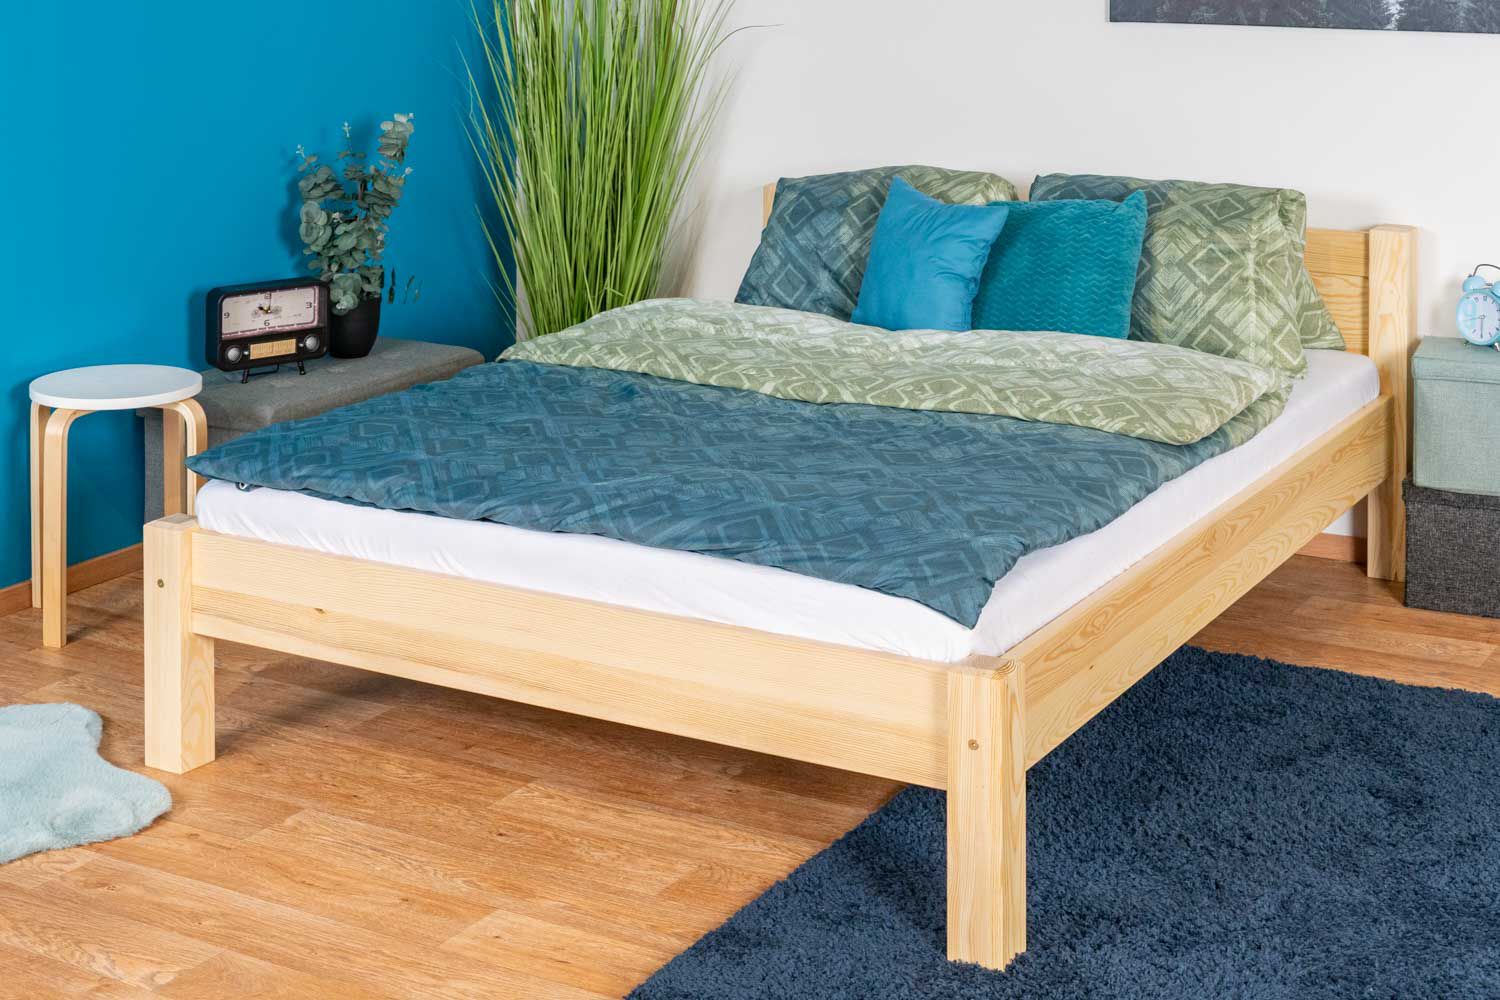 lit d'enfant / lit de jeunesse en bois de pin naturel massif A1, avec sommier à lattes - Dimensions 140 x 200 cm